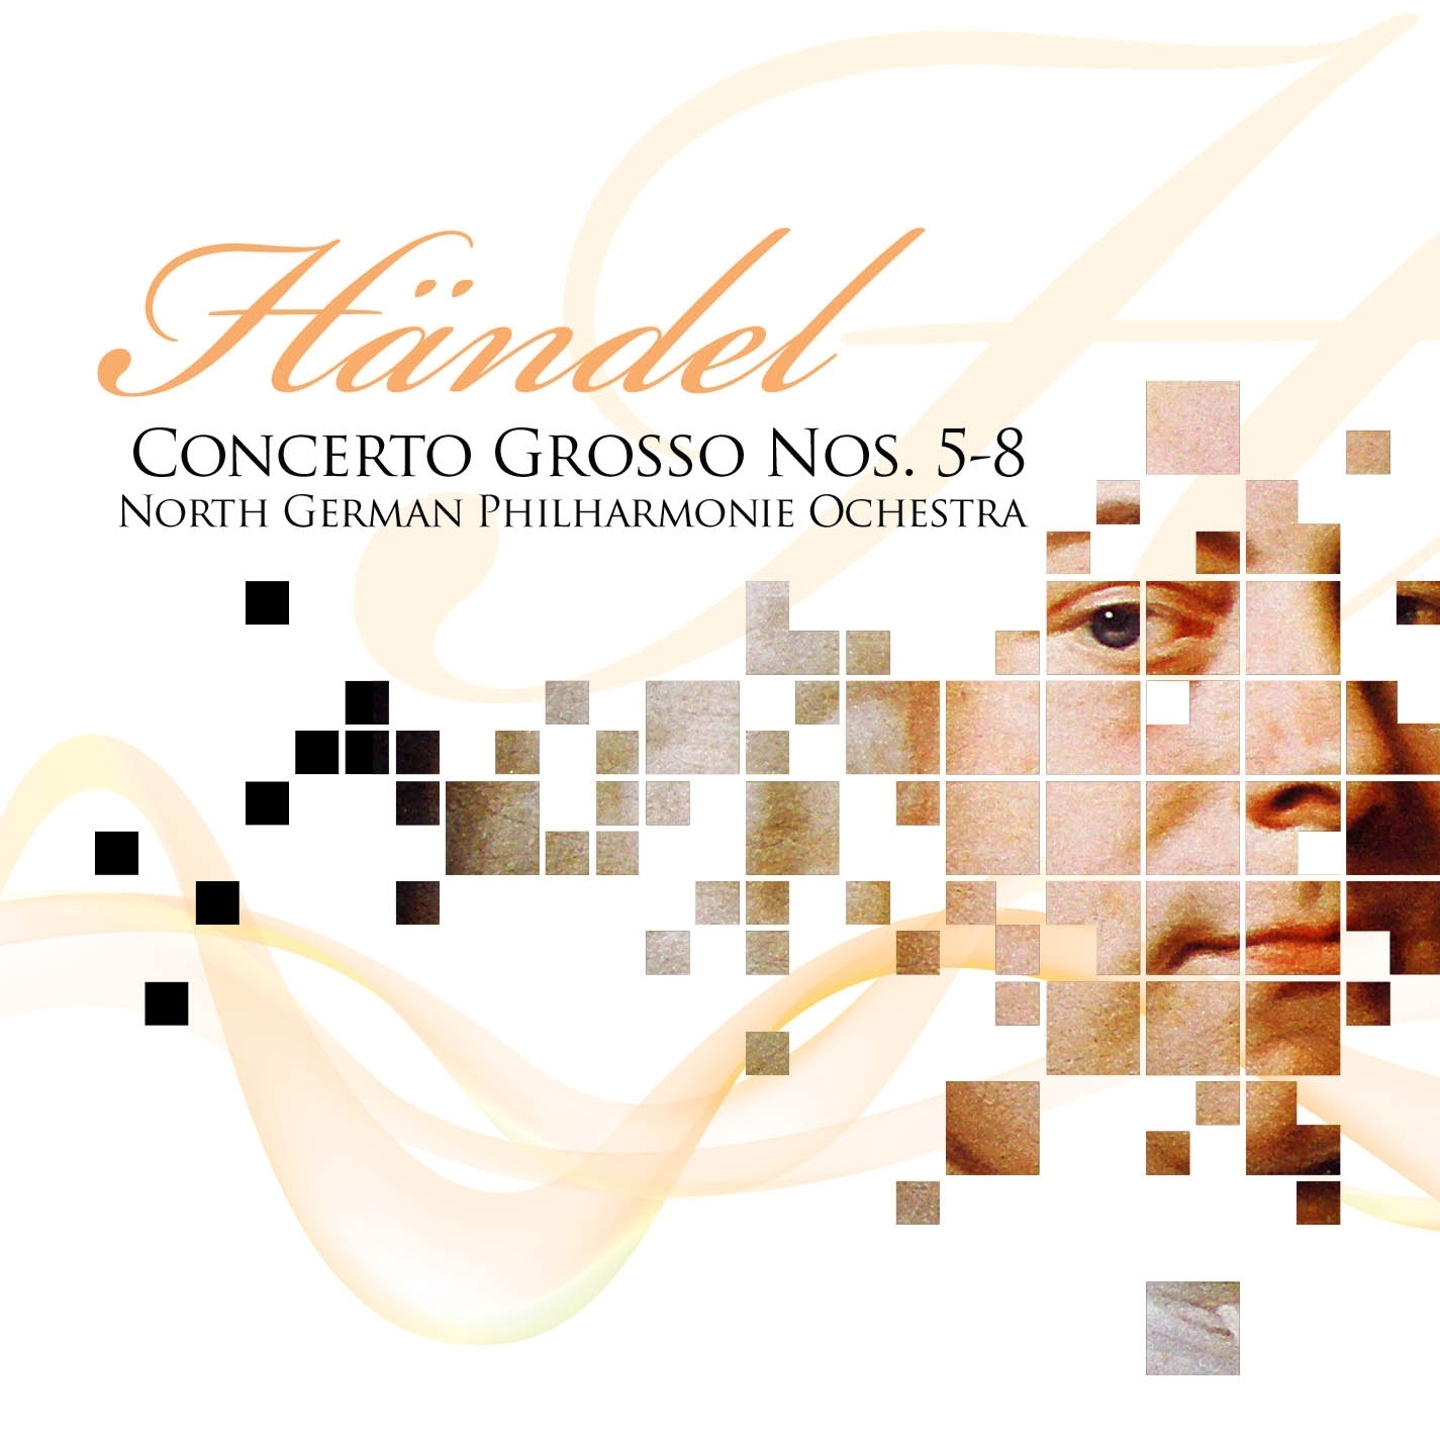 Concerto Grosso No. 7, in B-Flat Major, Op. 6 : Allegro